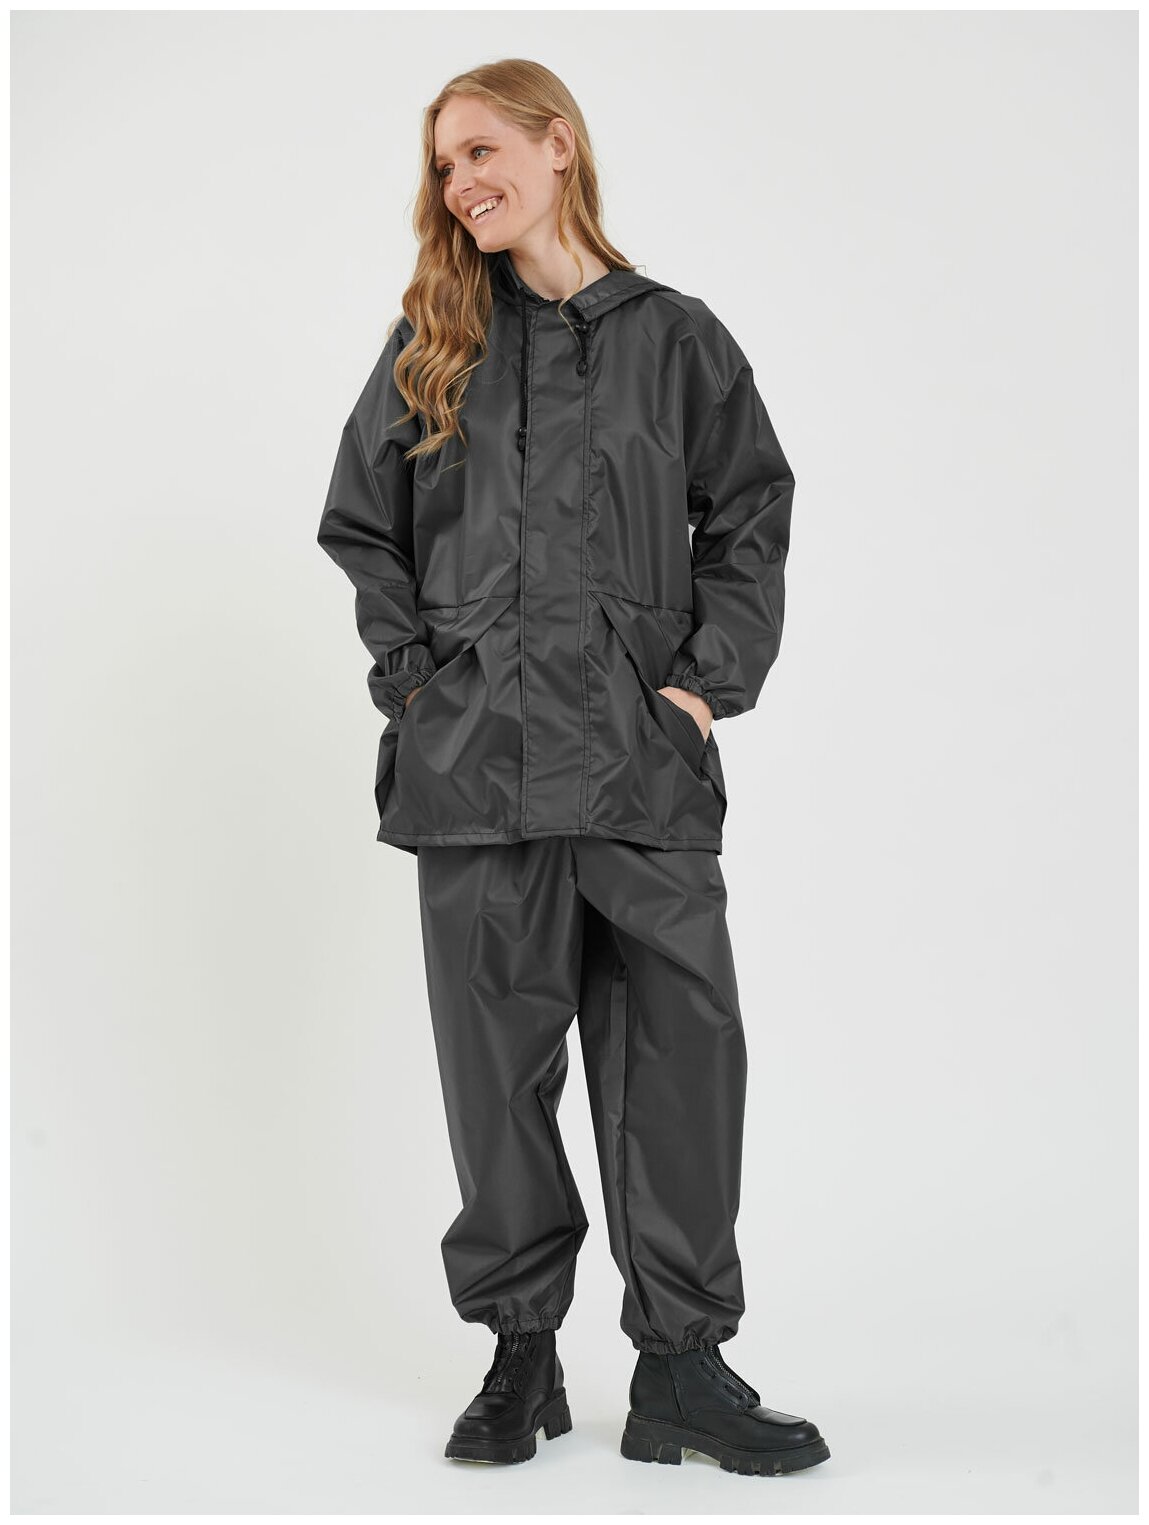 Дождевик женский пончо накидка непромокаемый костюм KATRAN циклон (Оксфорд, темно-серый), Размер: 52-54